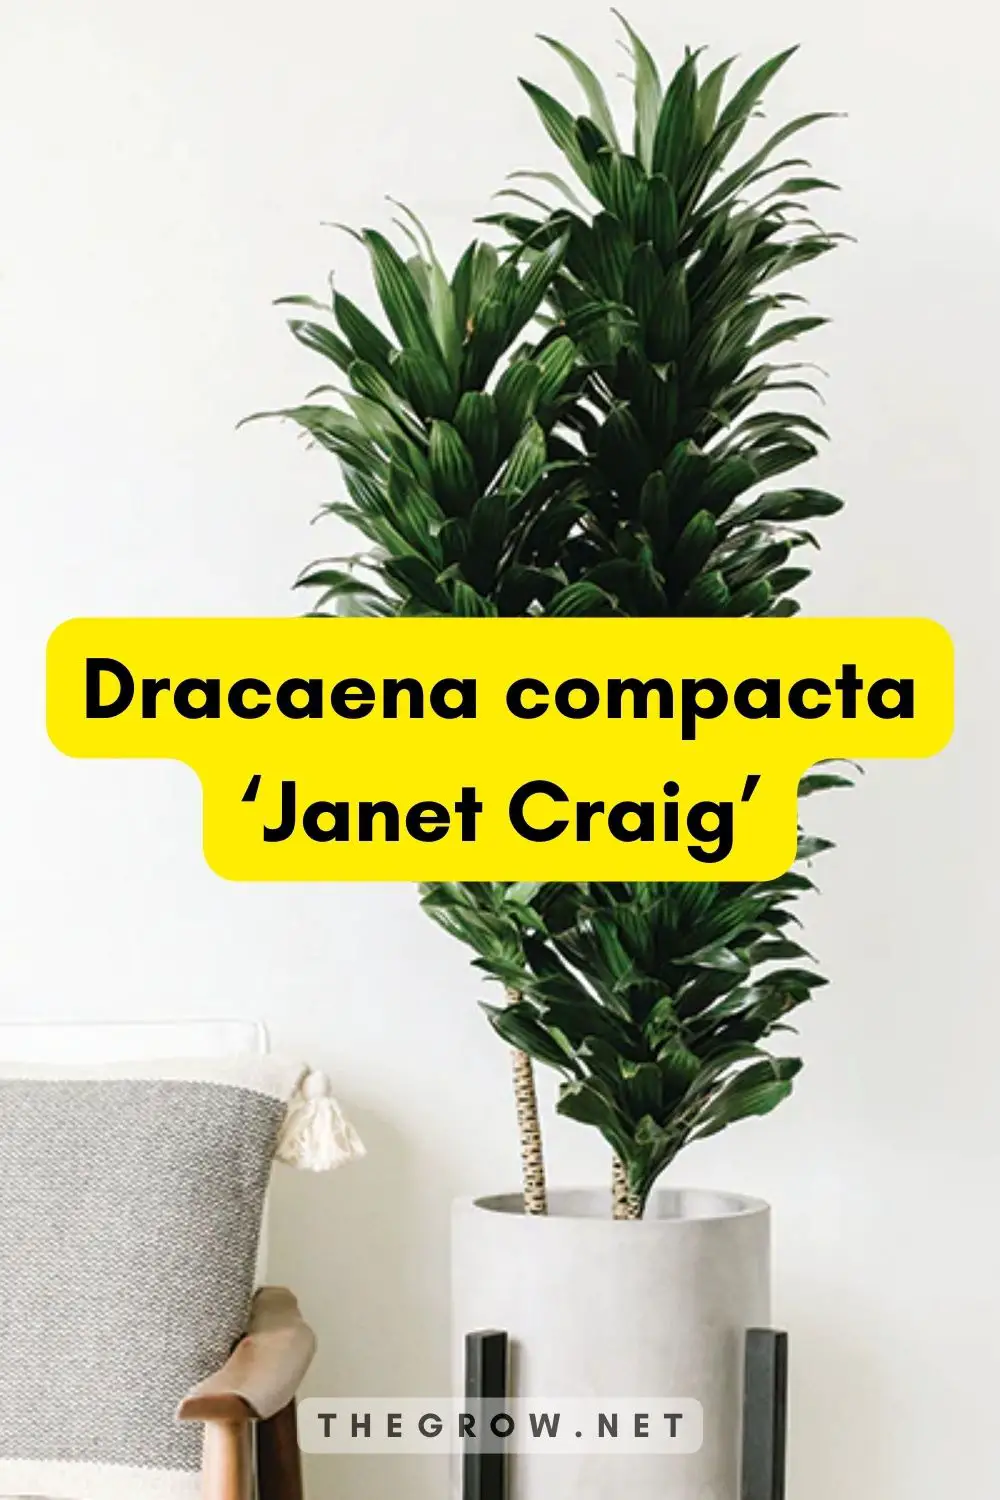 Dracaena compacta ‘Janet Craig’